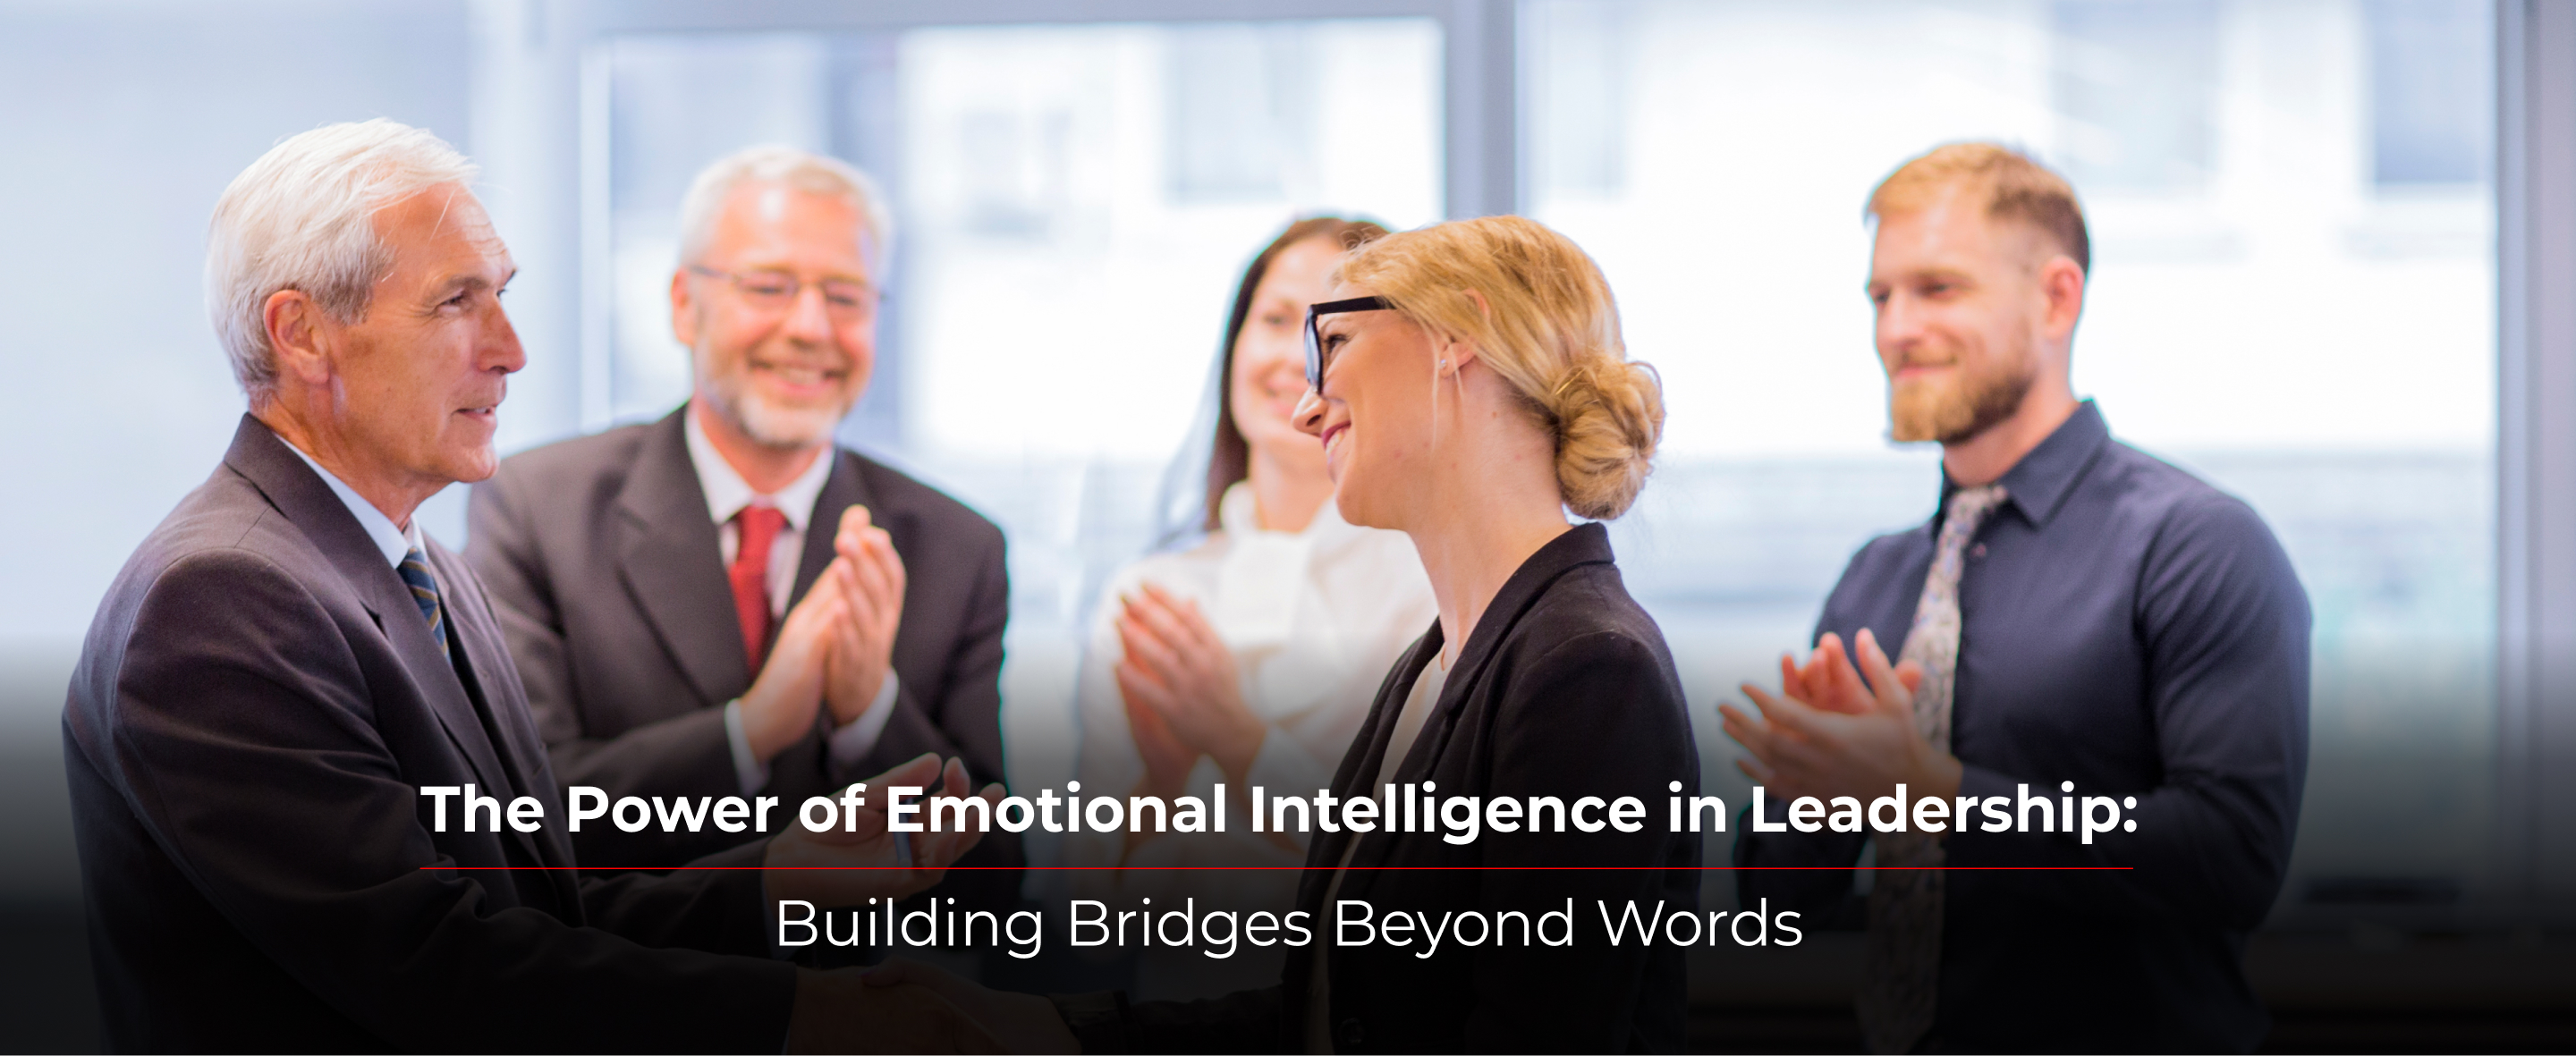 The Power of Emotional Intelligence in Leadership: Building Bridges Beyond Words